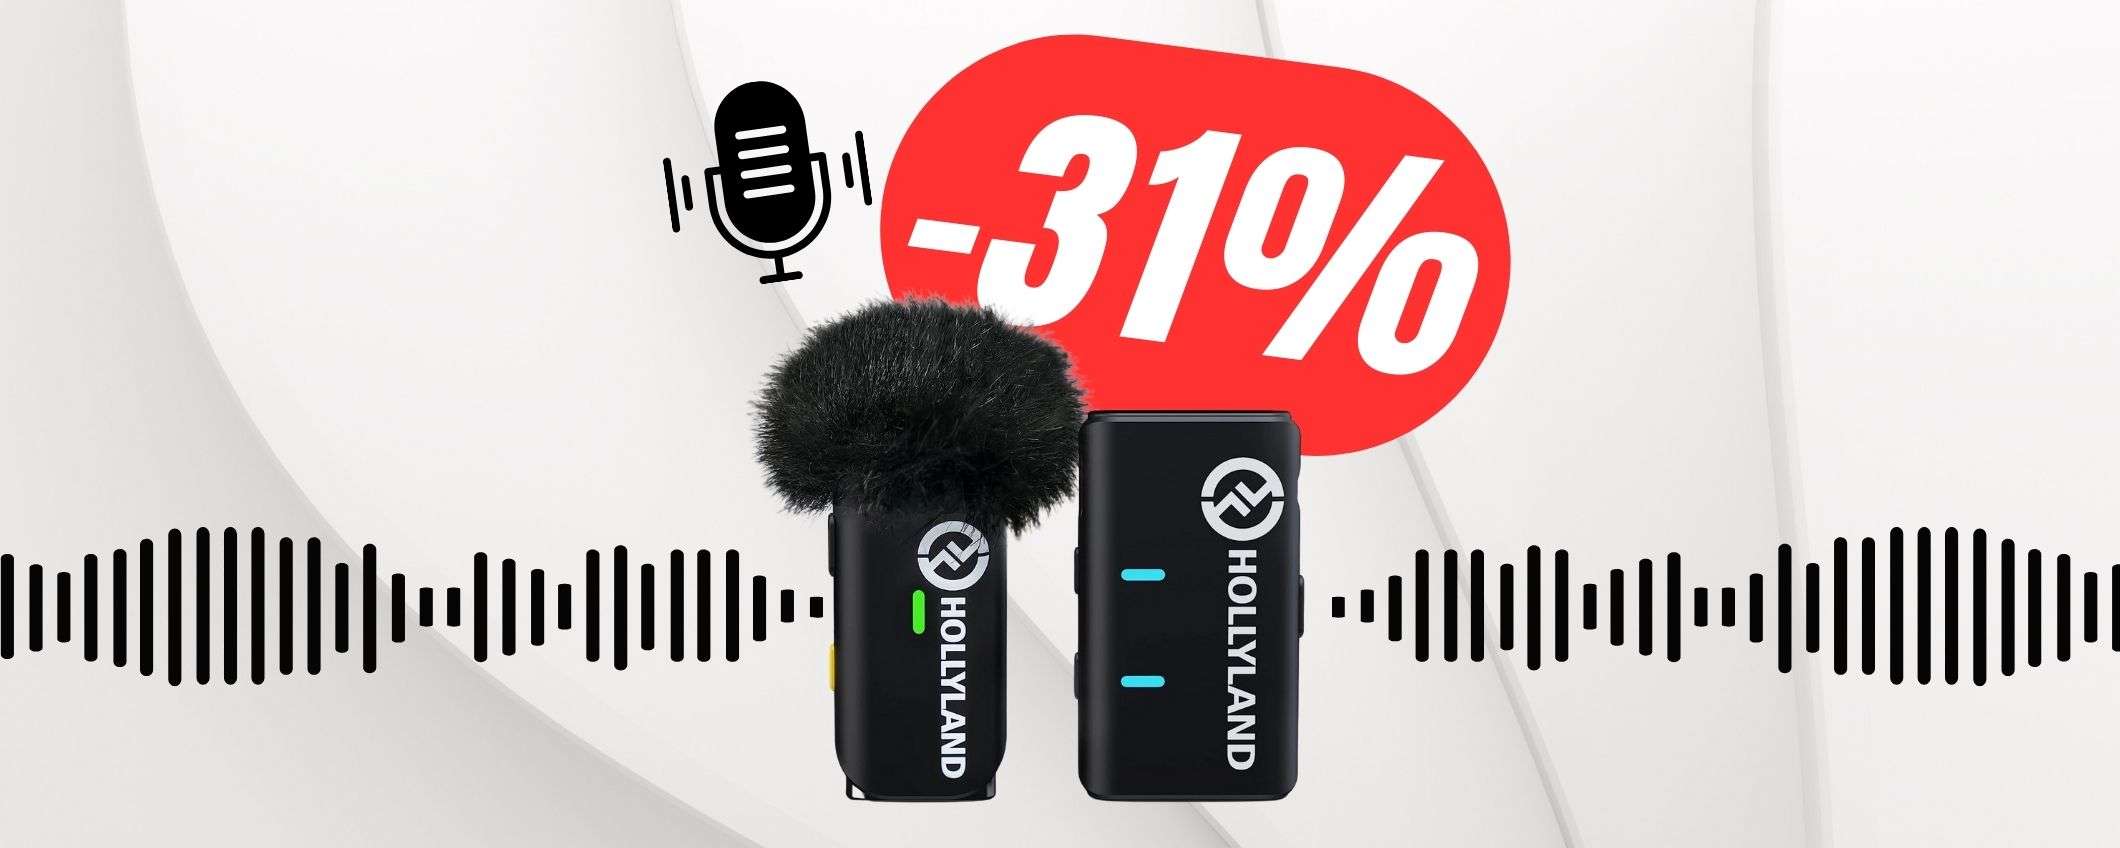 Questo microfono wireless CANCELLA il RUMORE ed è in SCONTO al -31%!